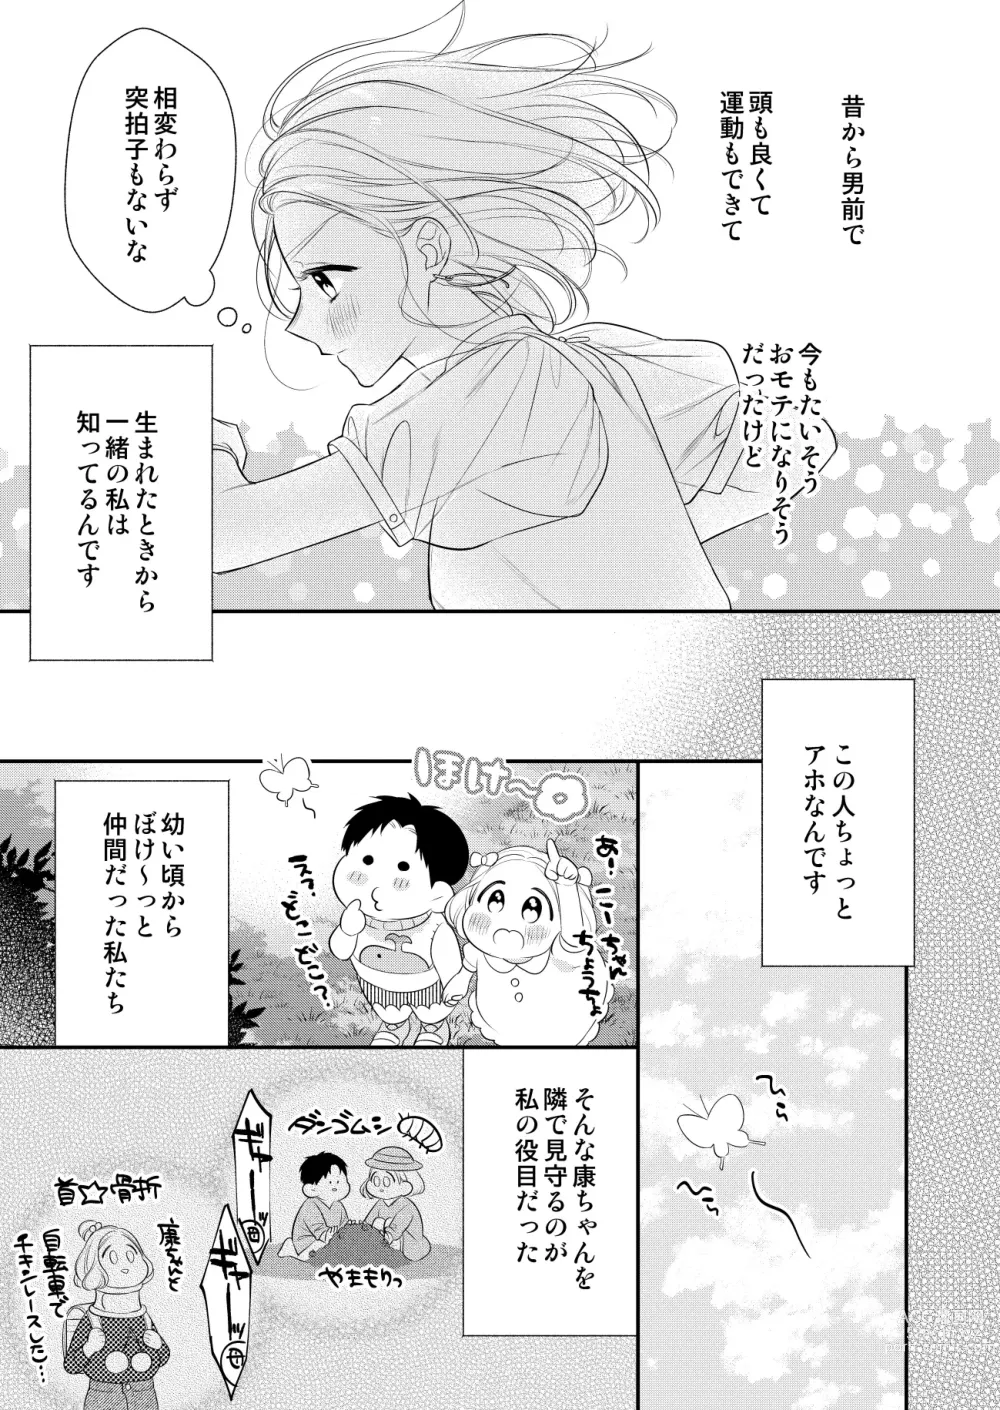 Page 11 of manga Eriito Jiei-kan ni Dekiai sa re Teru…Rashiidesu? ① Tameshi Yomi